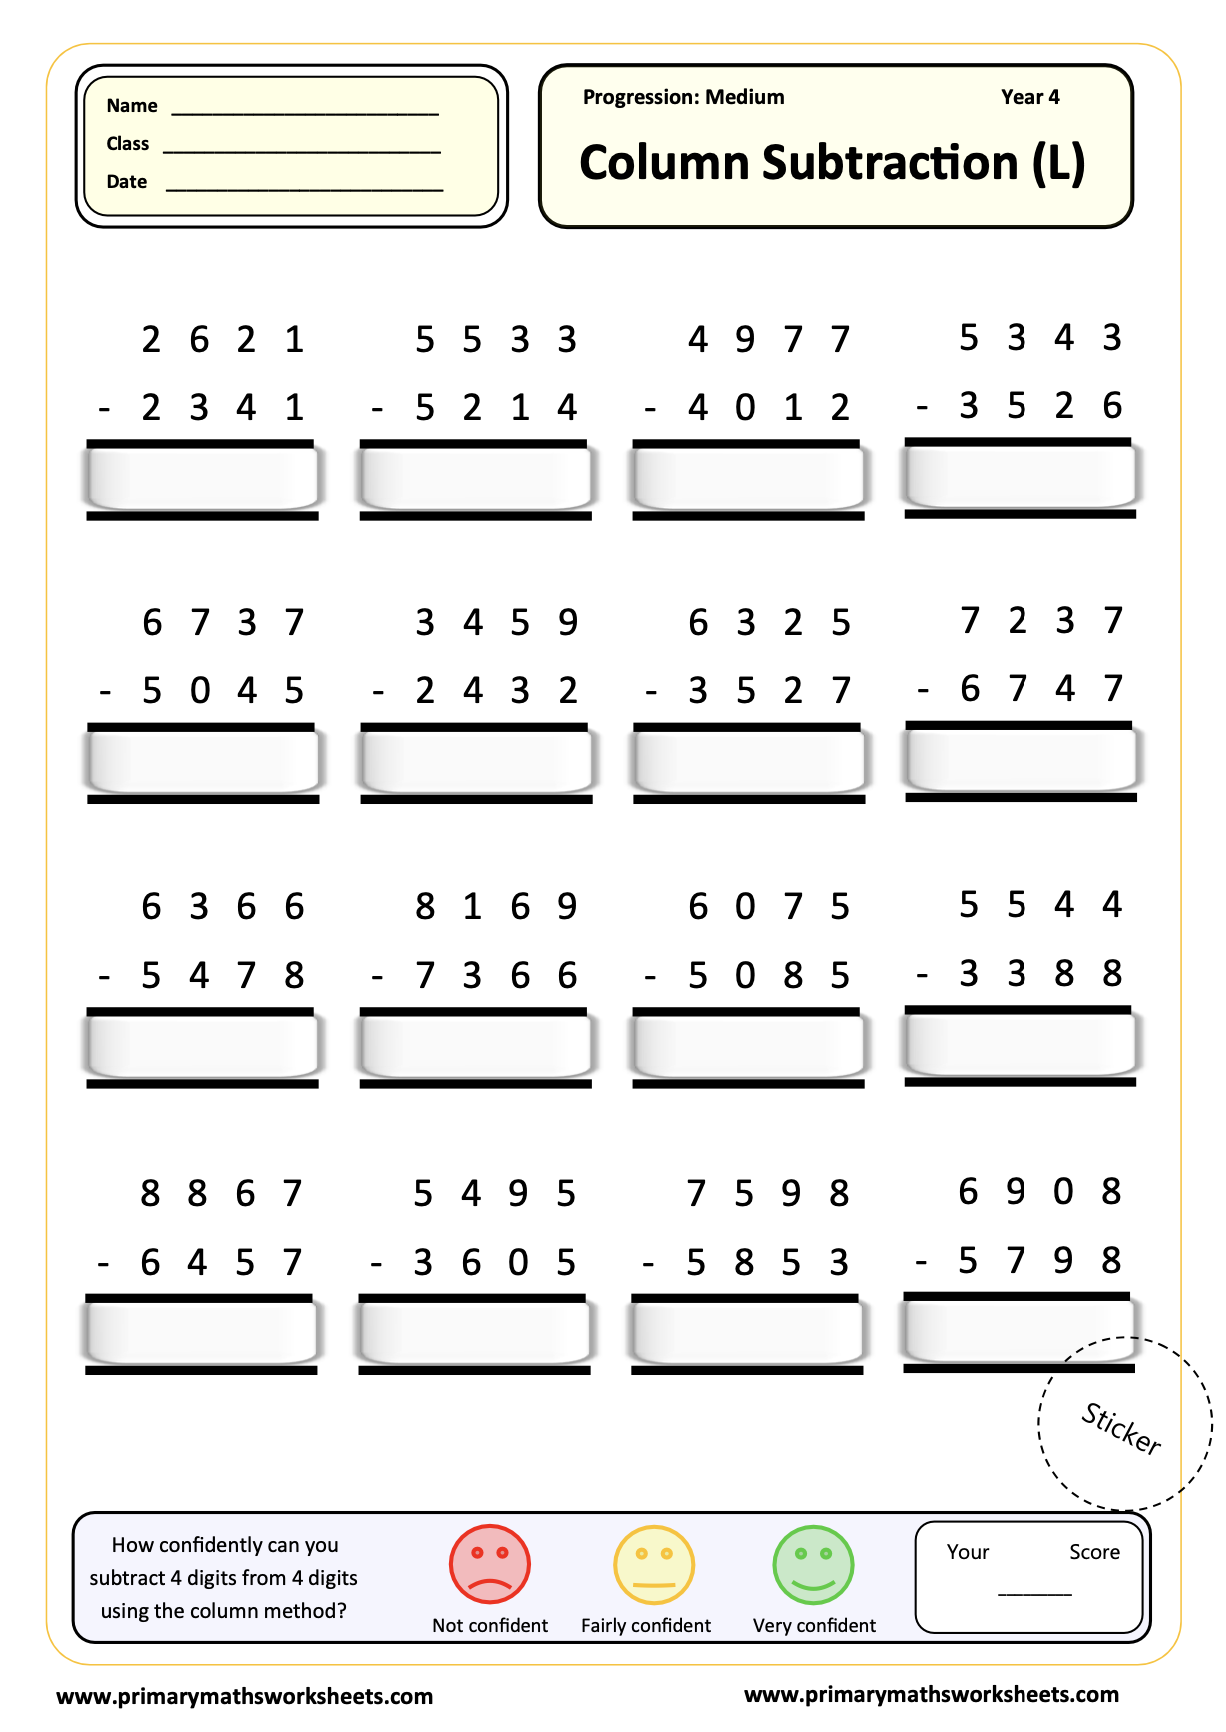 Column Subtraction (L) Worksheet